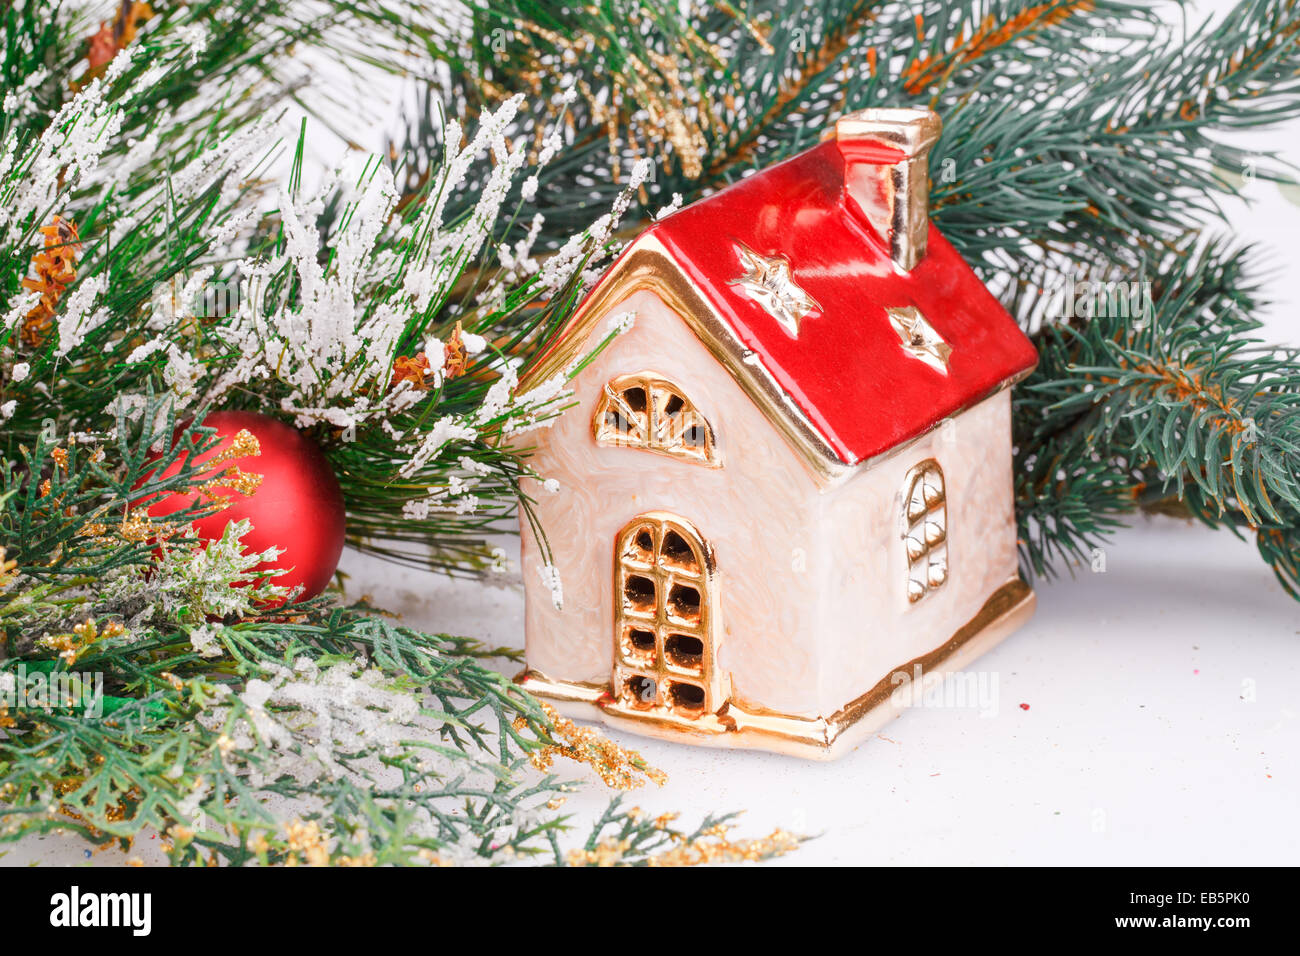 Decorazione di natale con sfera rossa, fir-ramo di albero e casa del giocattolo. Foto Stock